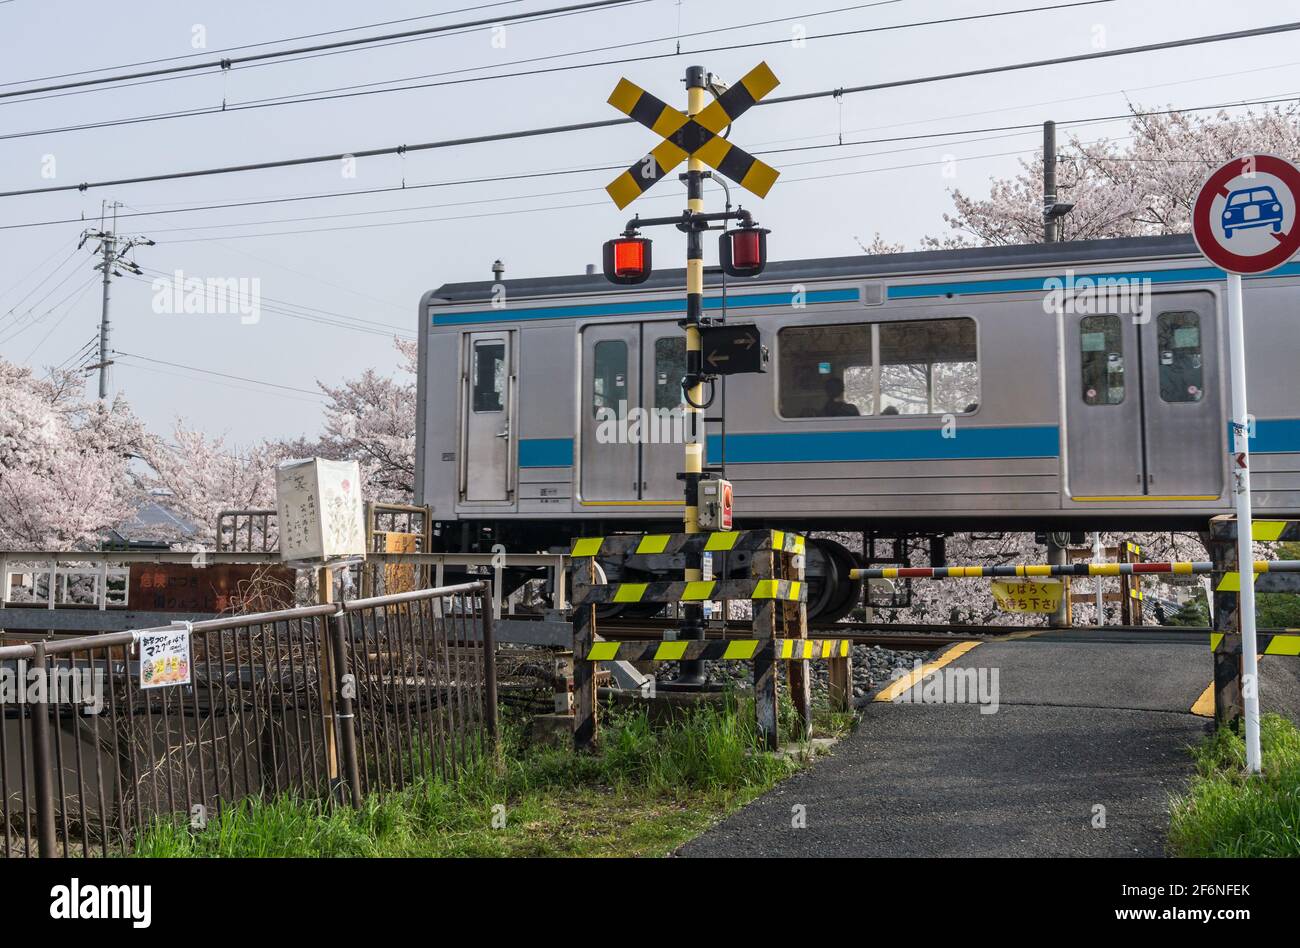 Un train JR Japan Railways 205 de la série Nara Line se rend à Kyoto en passant un passage à niveau à Nara, au Japon, en avril Banque D'Images